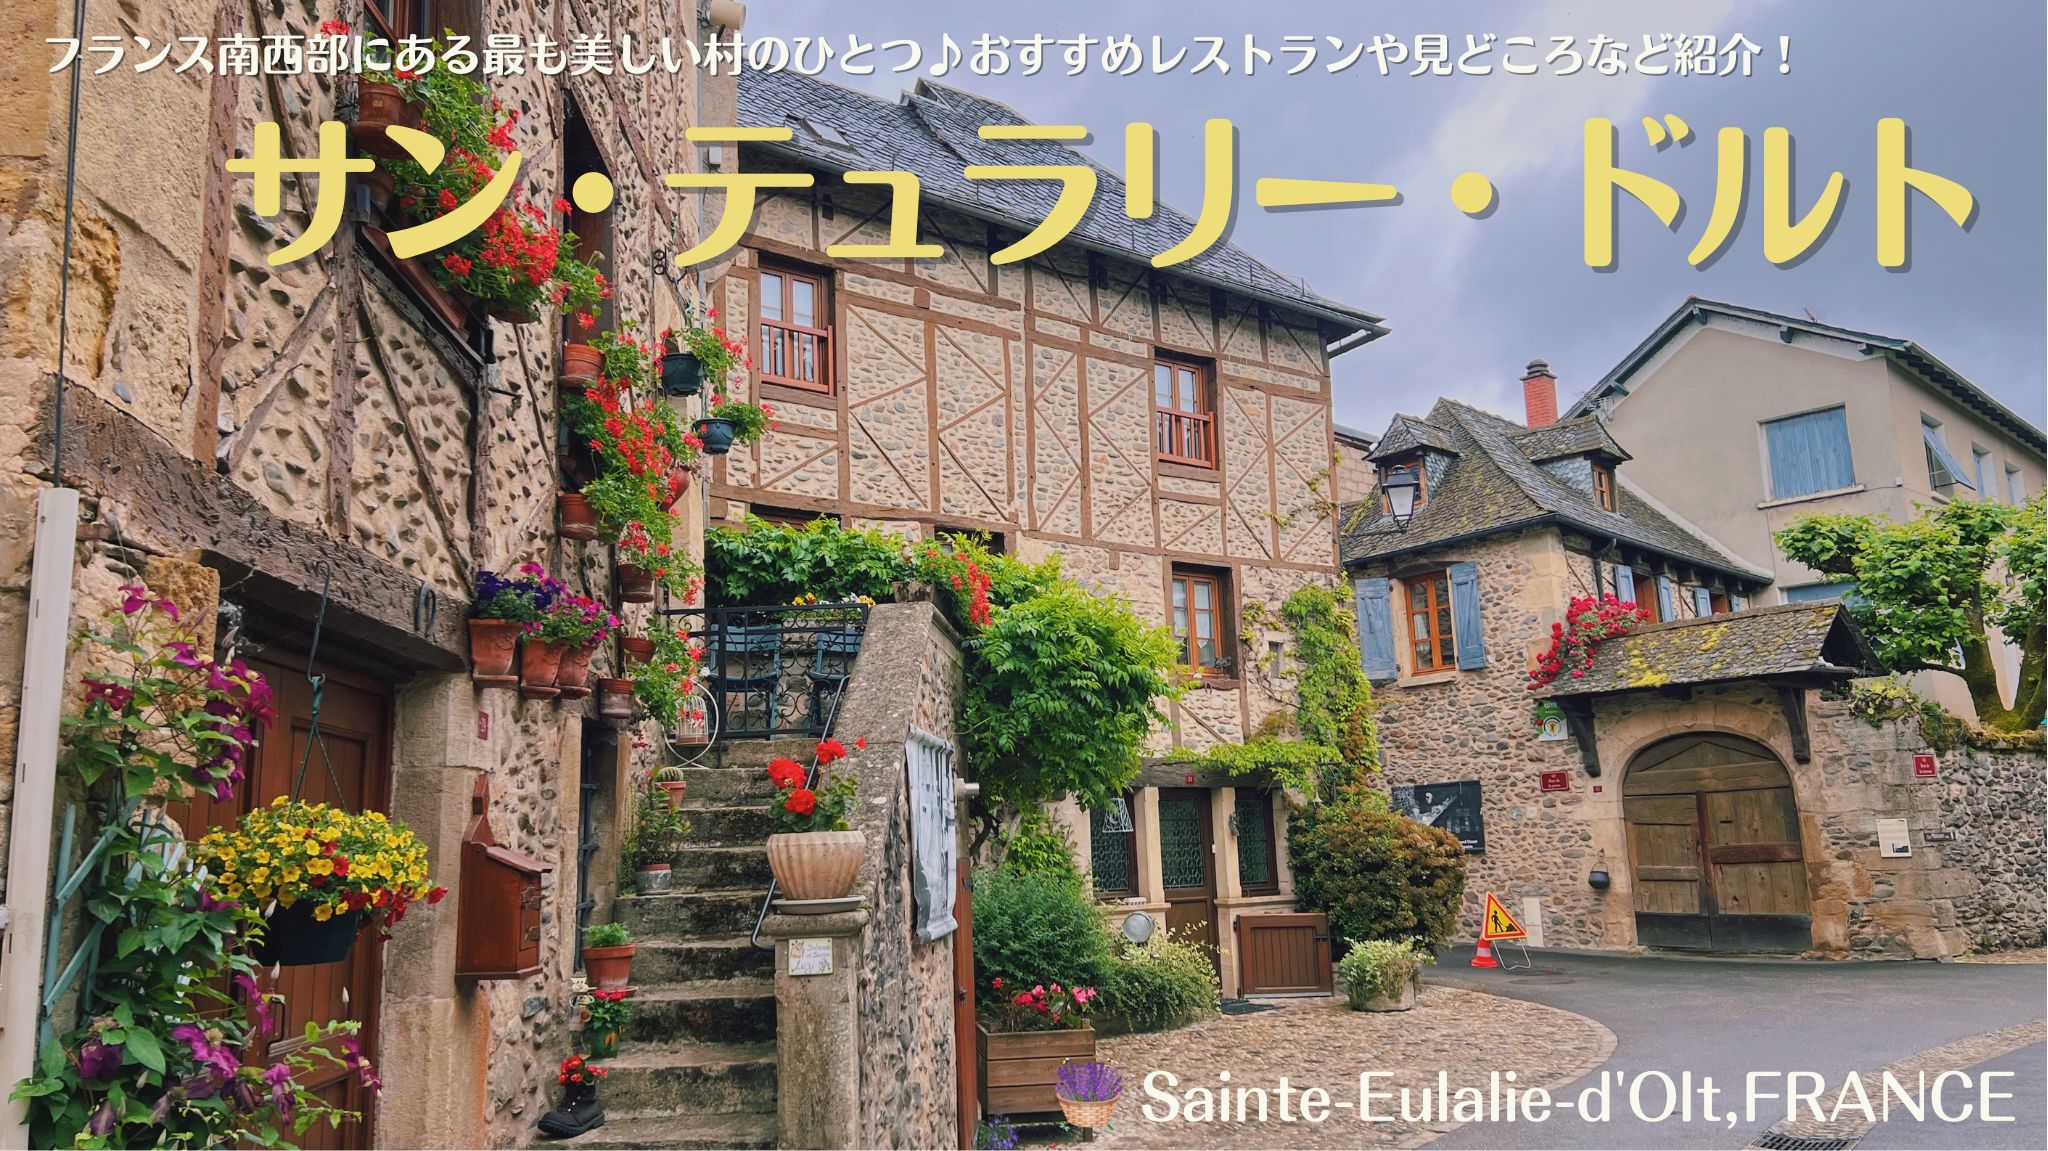 Sainte-Eulalie-d'Olt サン・テュラリー・ドルト、南西フランスにあるフランスの最も美しい村のひとつ